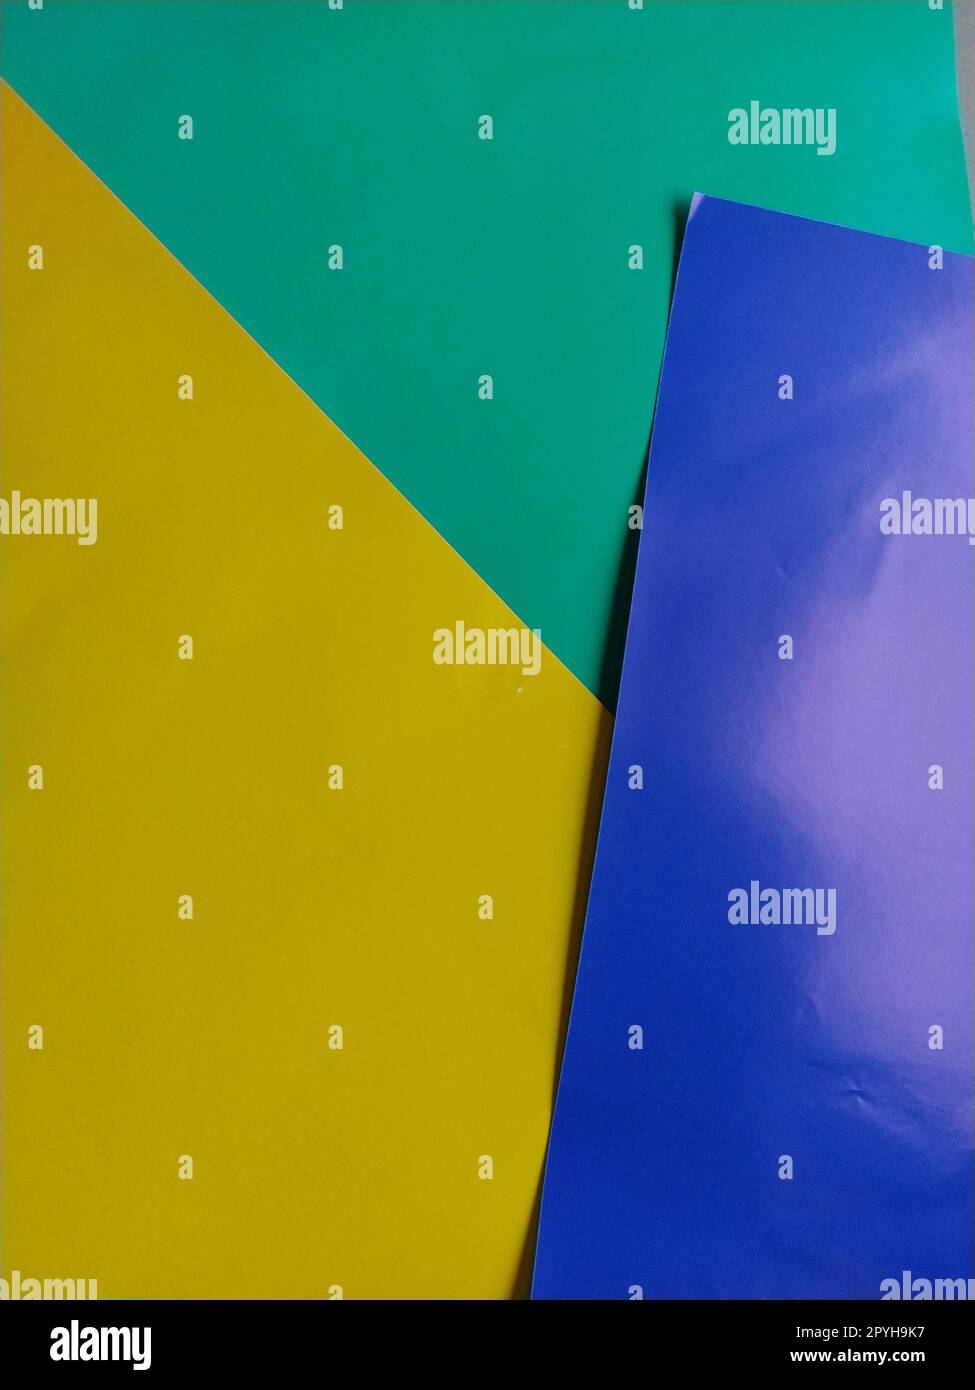 Blaues, grünes und gelbes Papier werden übereinander gestapelt. Farbenfroher Hintergrund. Blauer Hintergrund mit pinkfarbenem Verlauf. Farbige Papierbögen für Kreativität Stockfoto